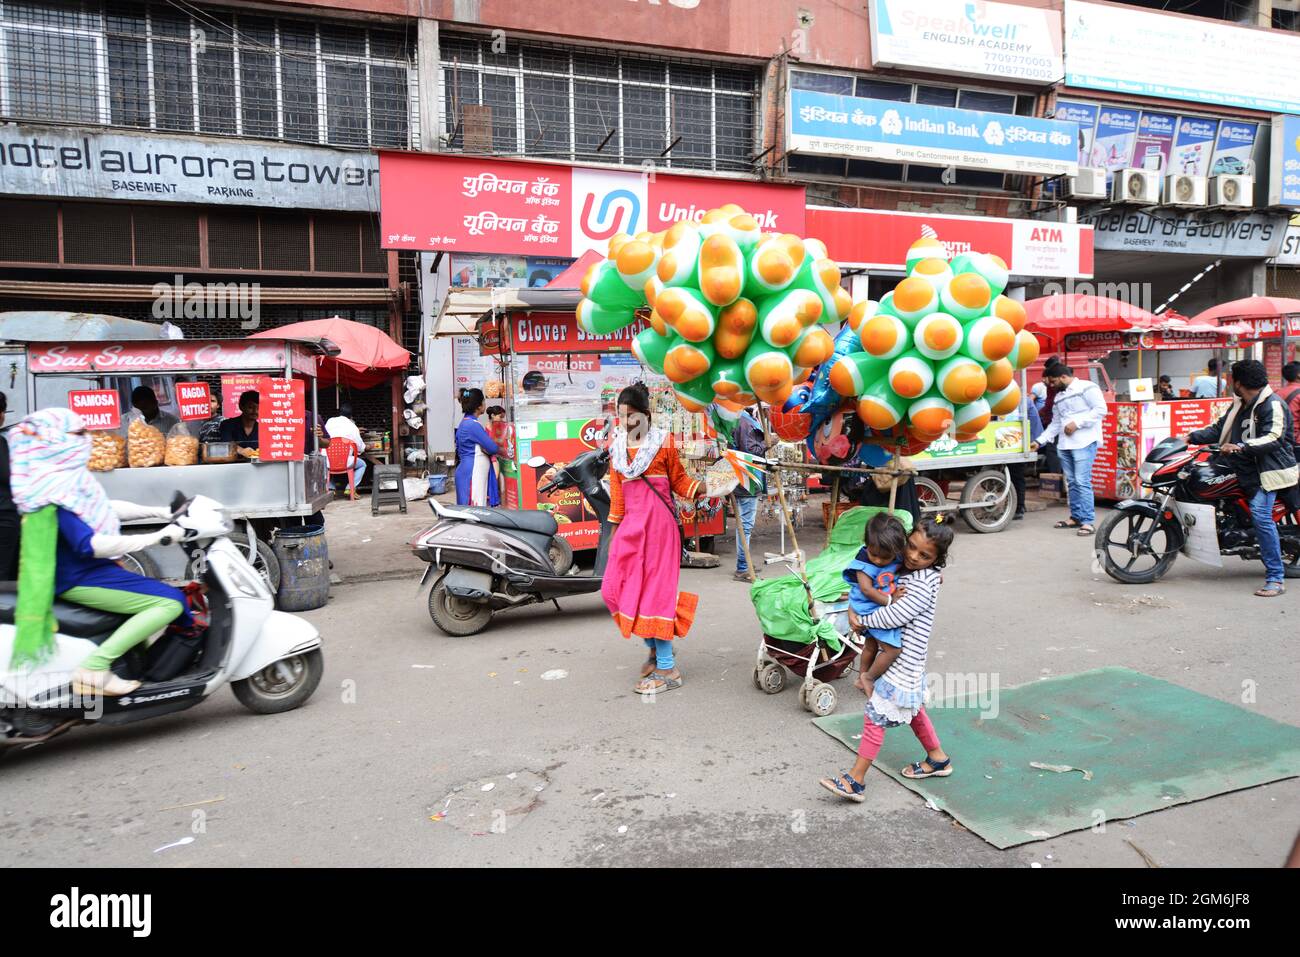 Ballons drapeau indien vendus pour la fête de l'indépendance à Pune, Inde. Banque D'Images